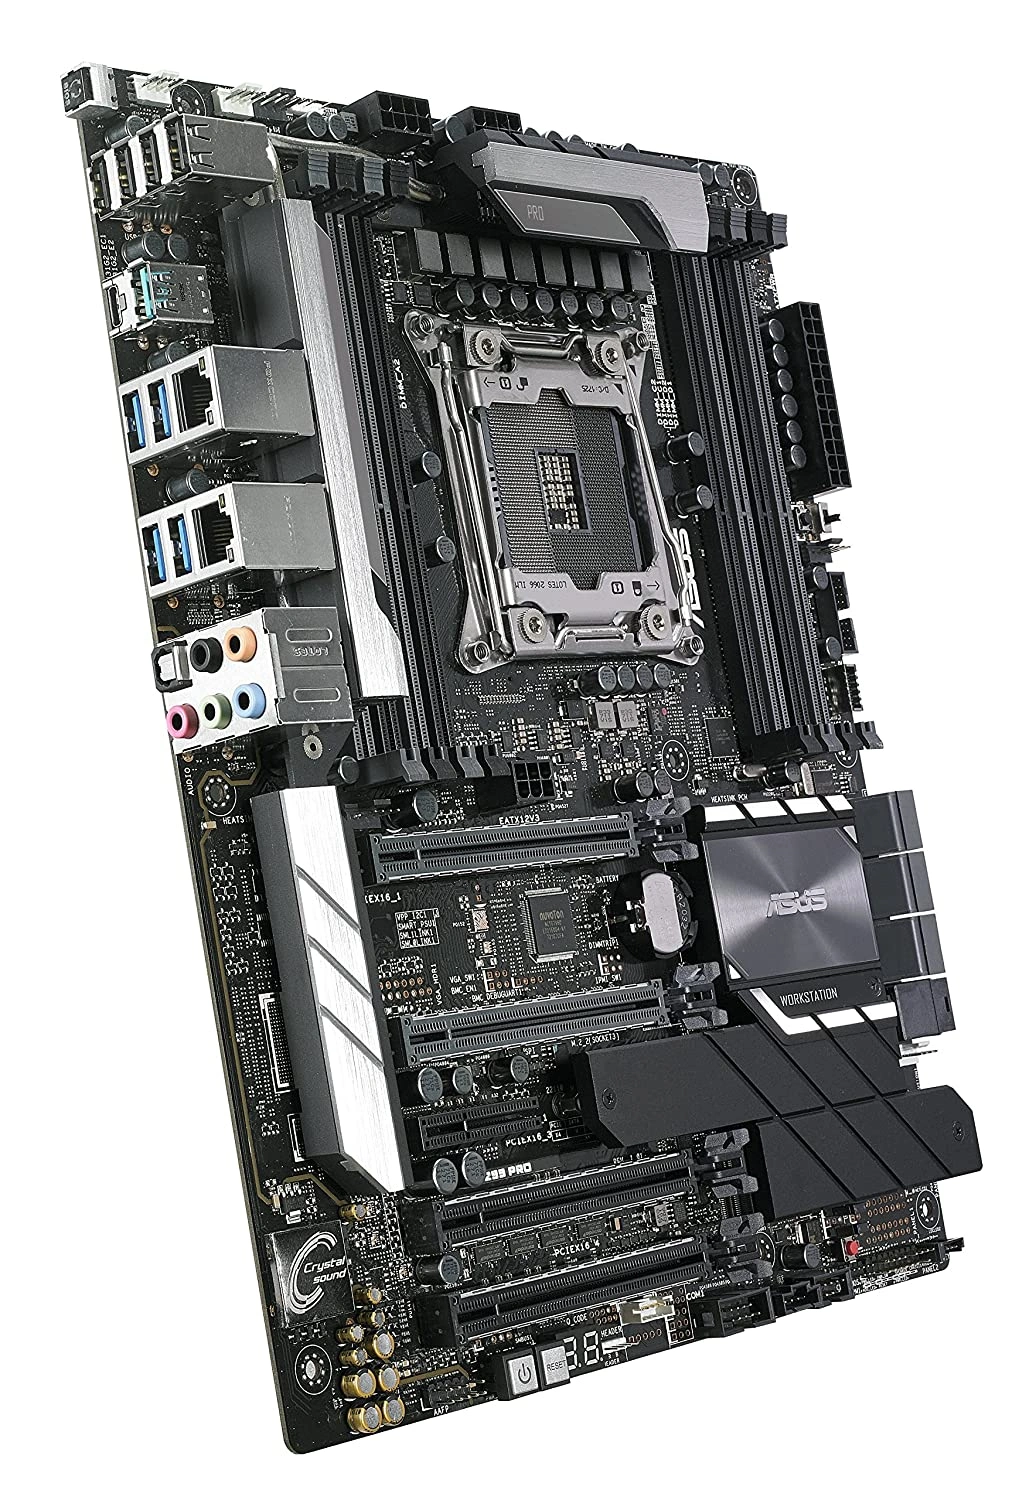 WS-X299-PRO - Intel LGA 2066 ATX motherboard SUPPORTS CORE X-SERIES PROCESSOR-5